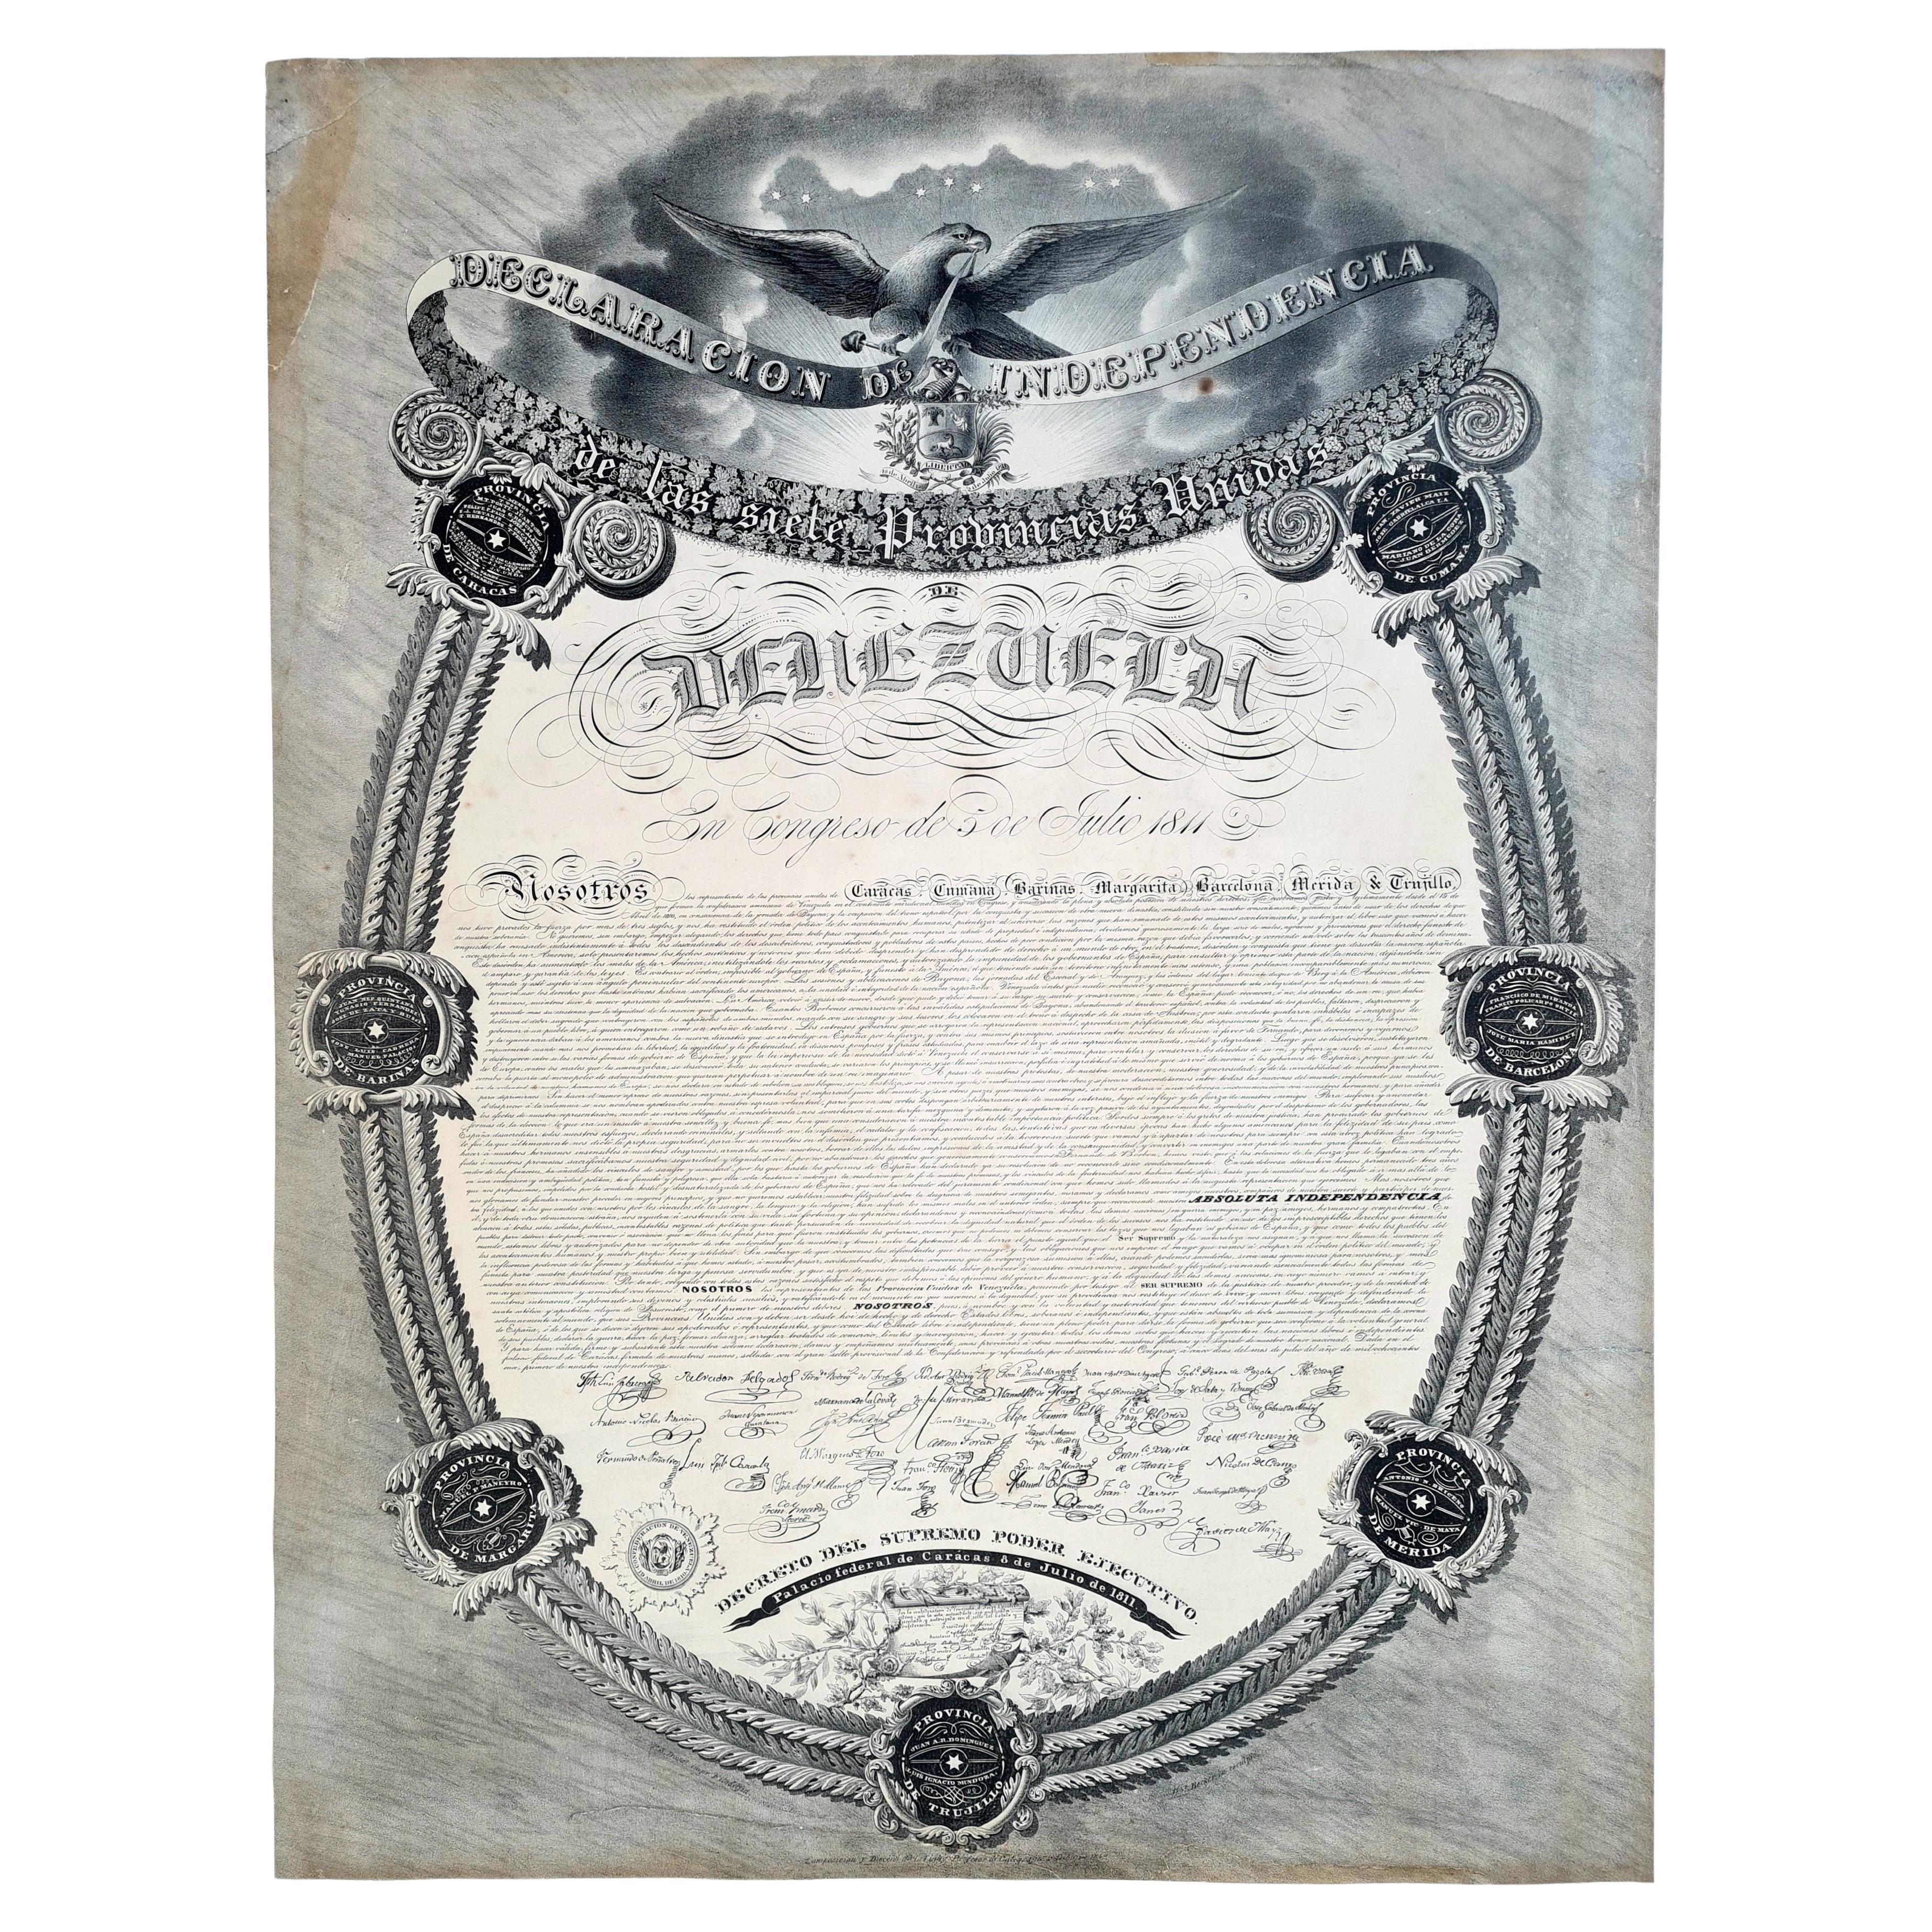 Extrêmement rare copie de la déclaration d'indépendance du Venezuela, 1811